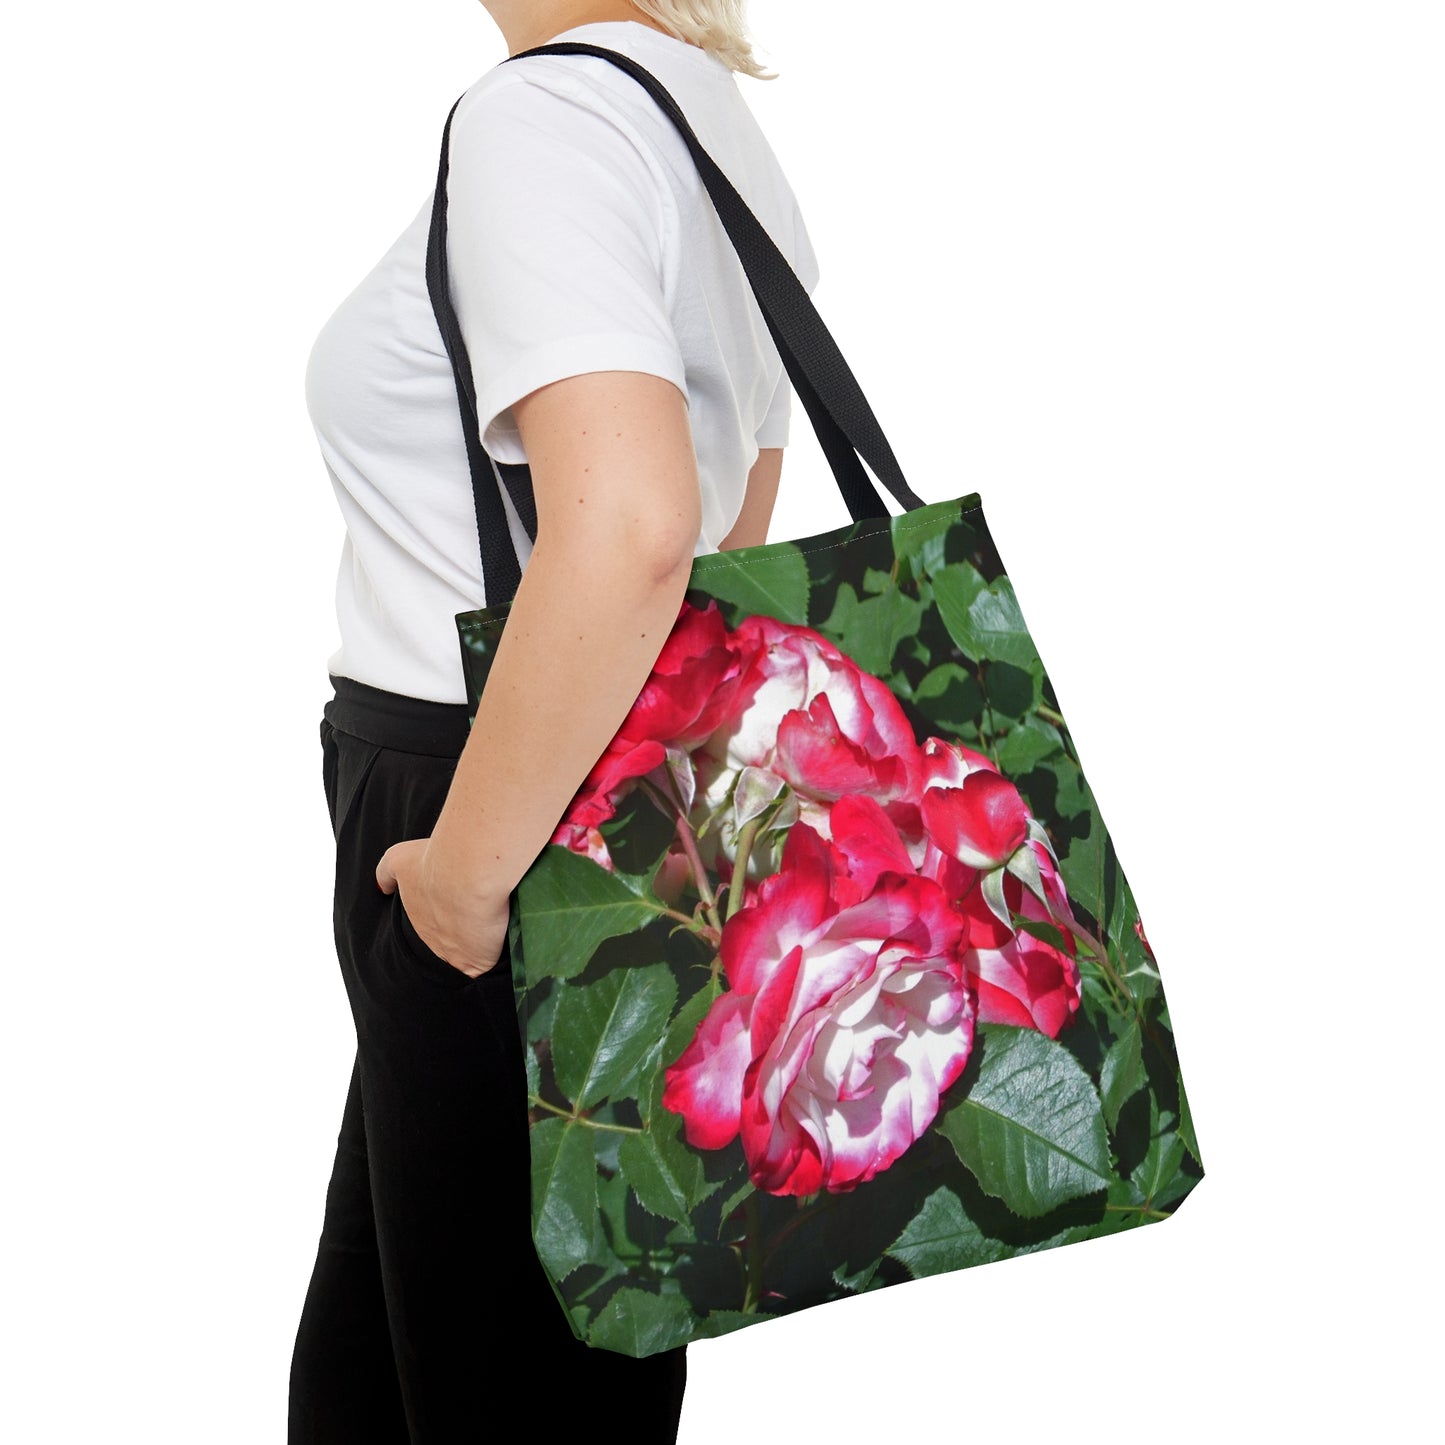 Romantic Roses Tote Bag